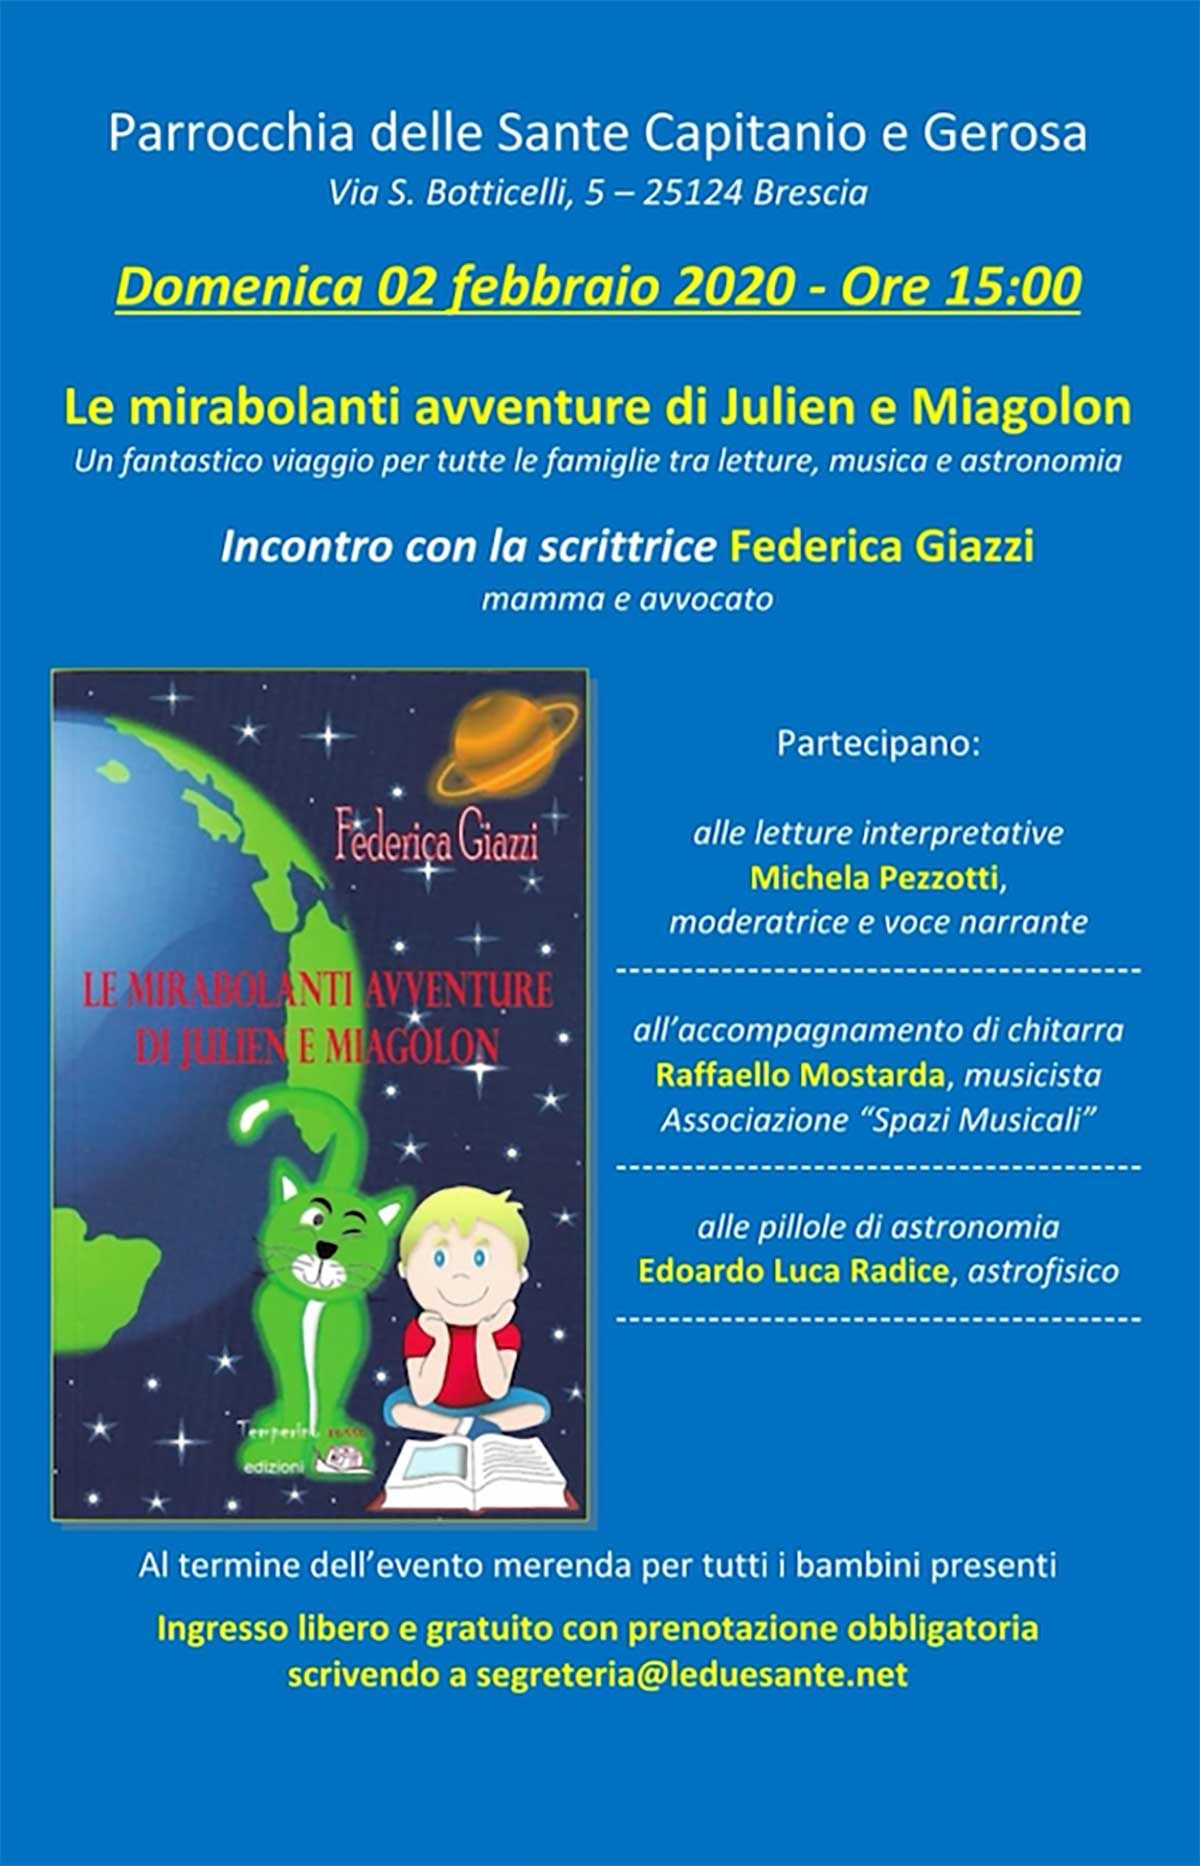 mirabolanti-avventure-Miagolon-2sante